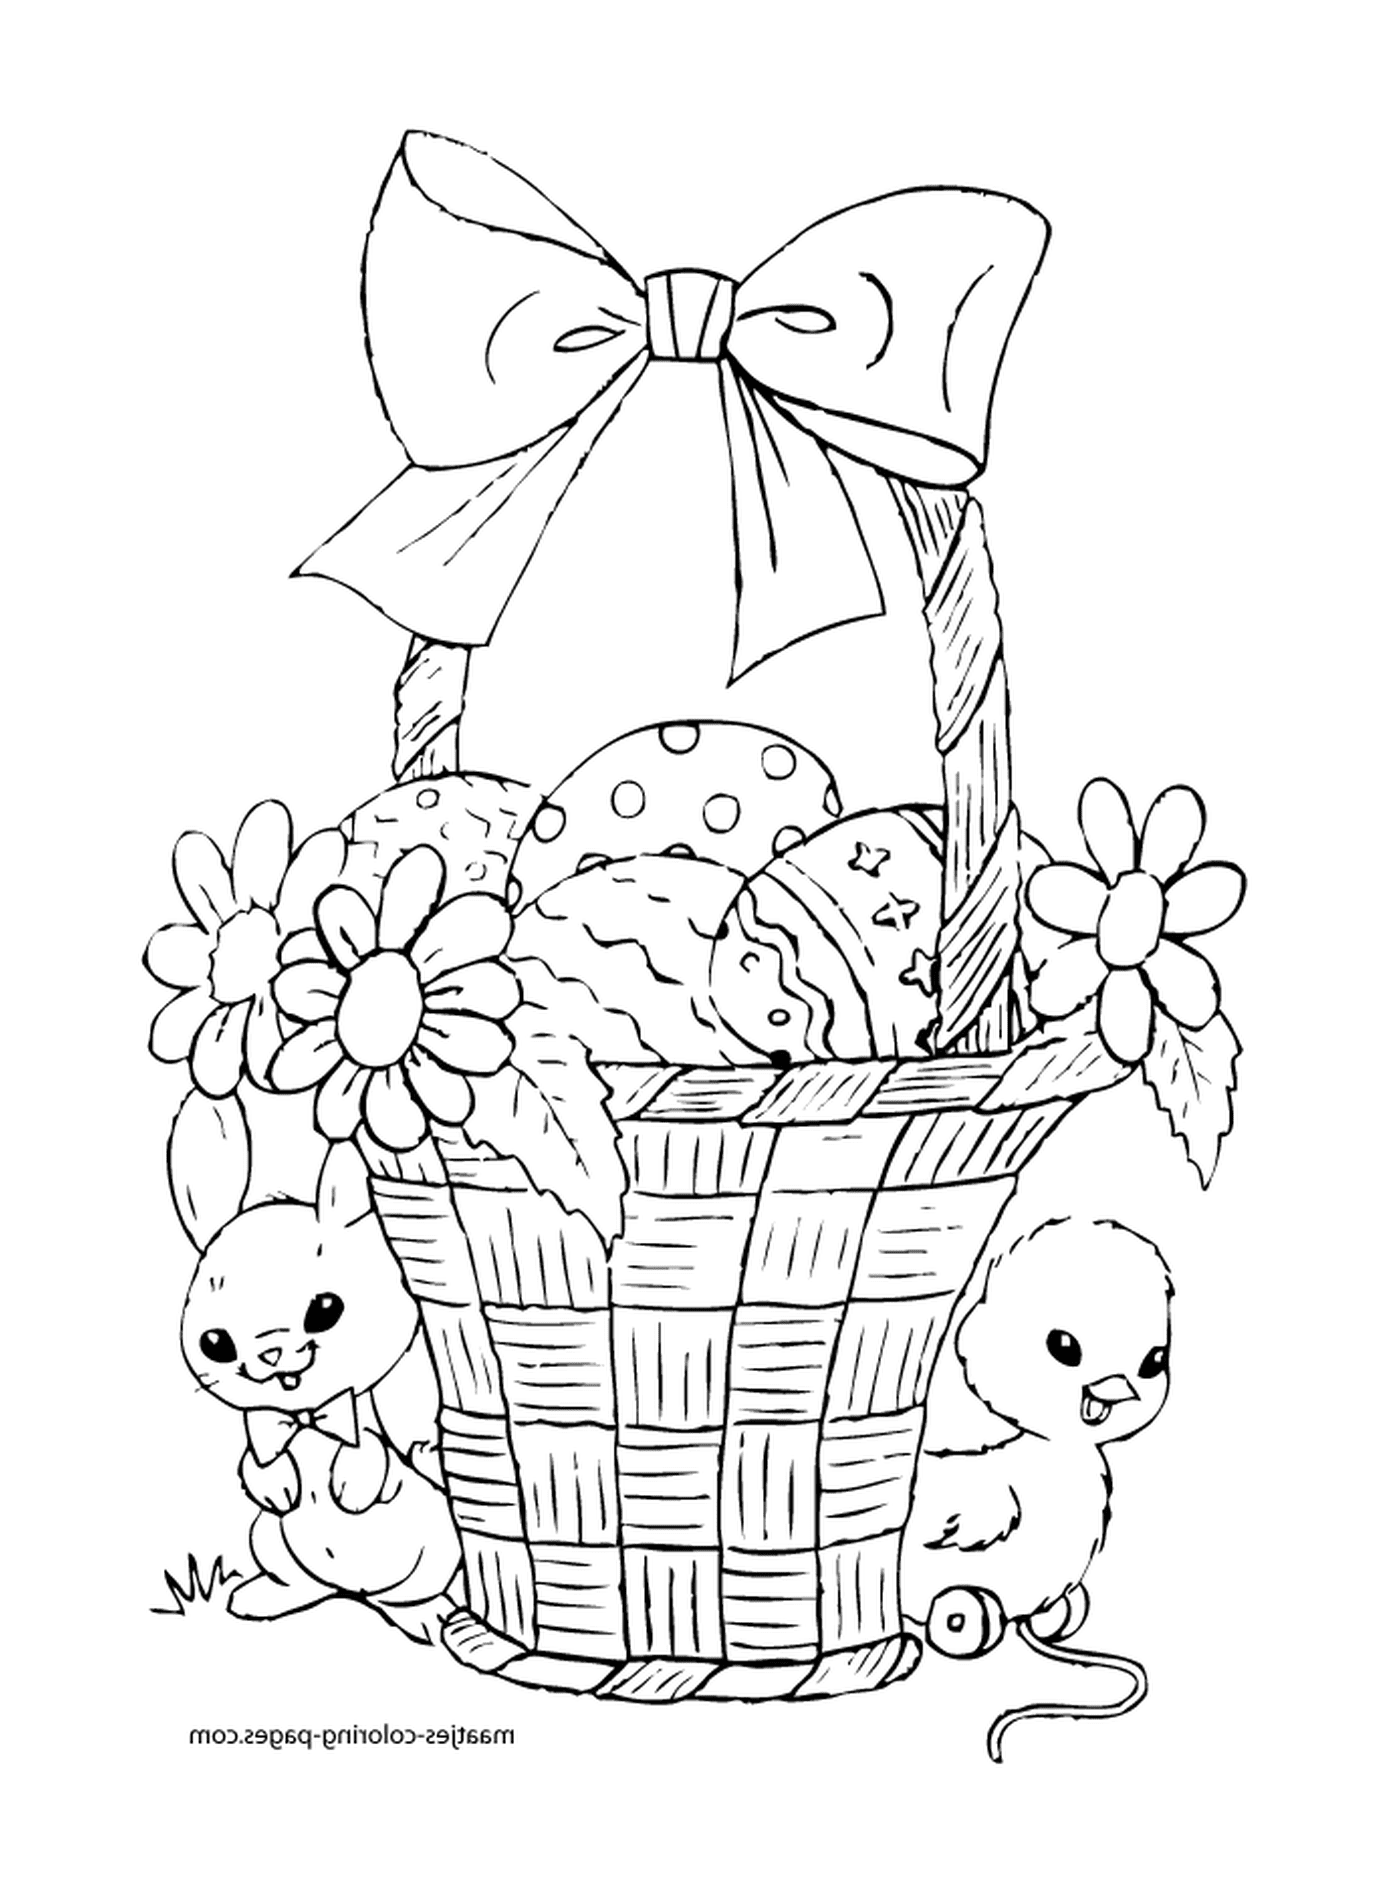  盛满复活节鸡蛋和鲜花的篮子 